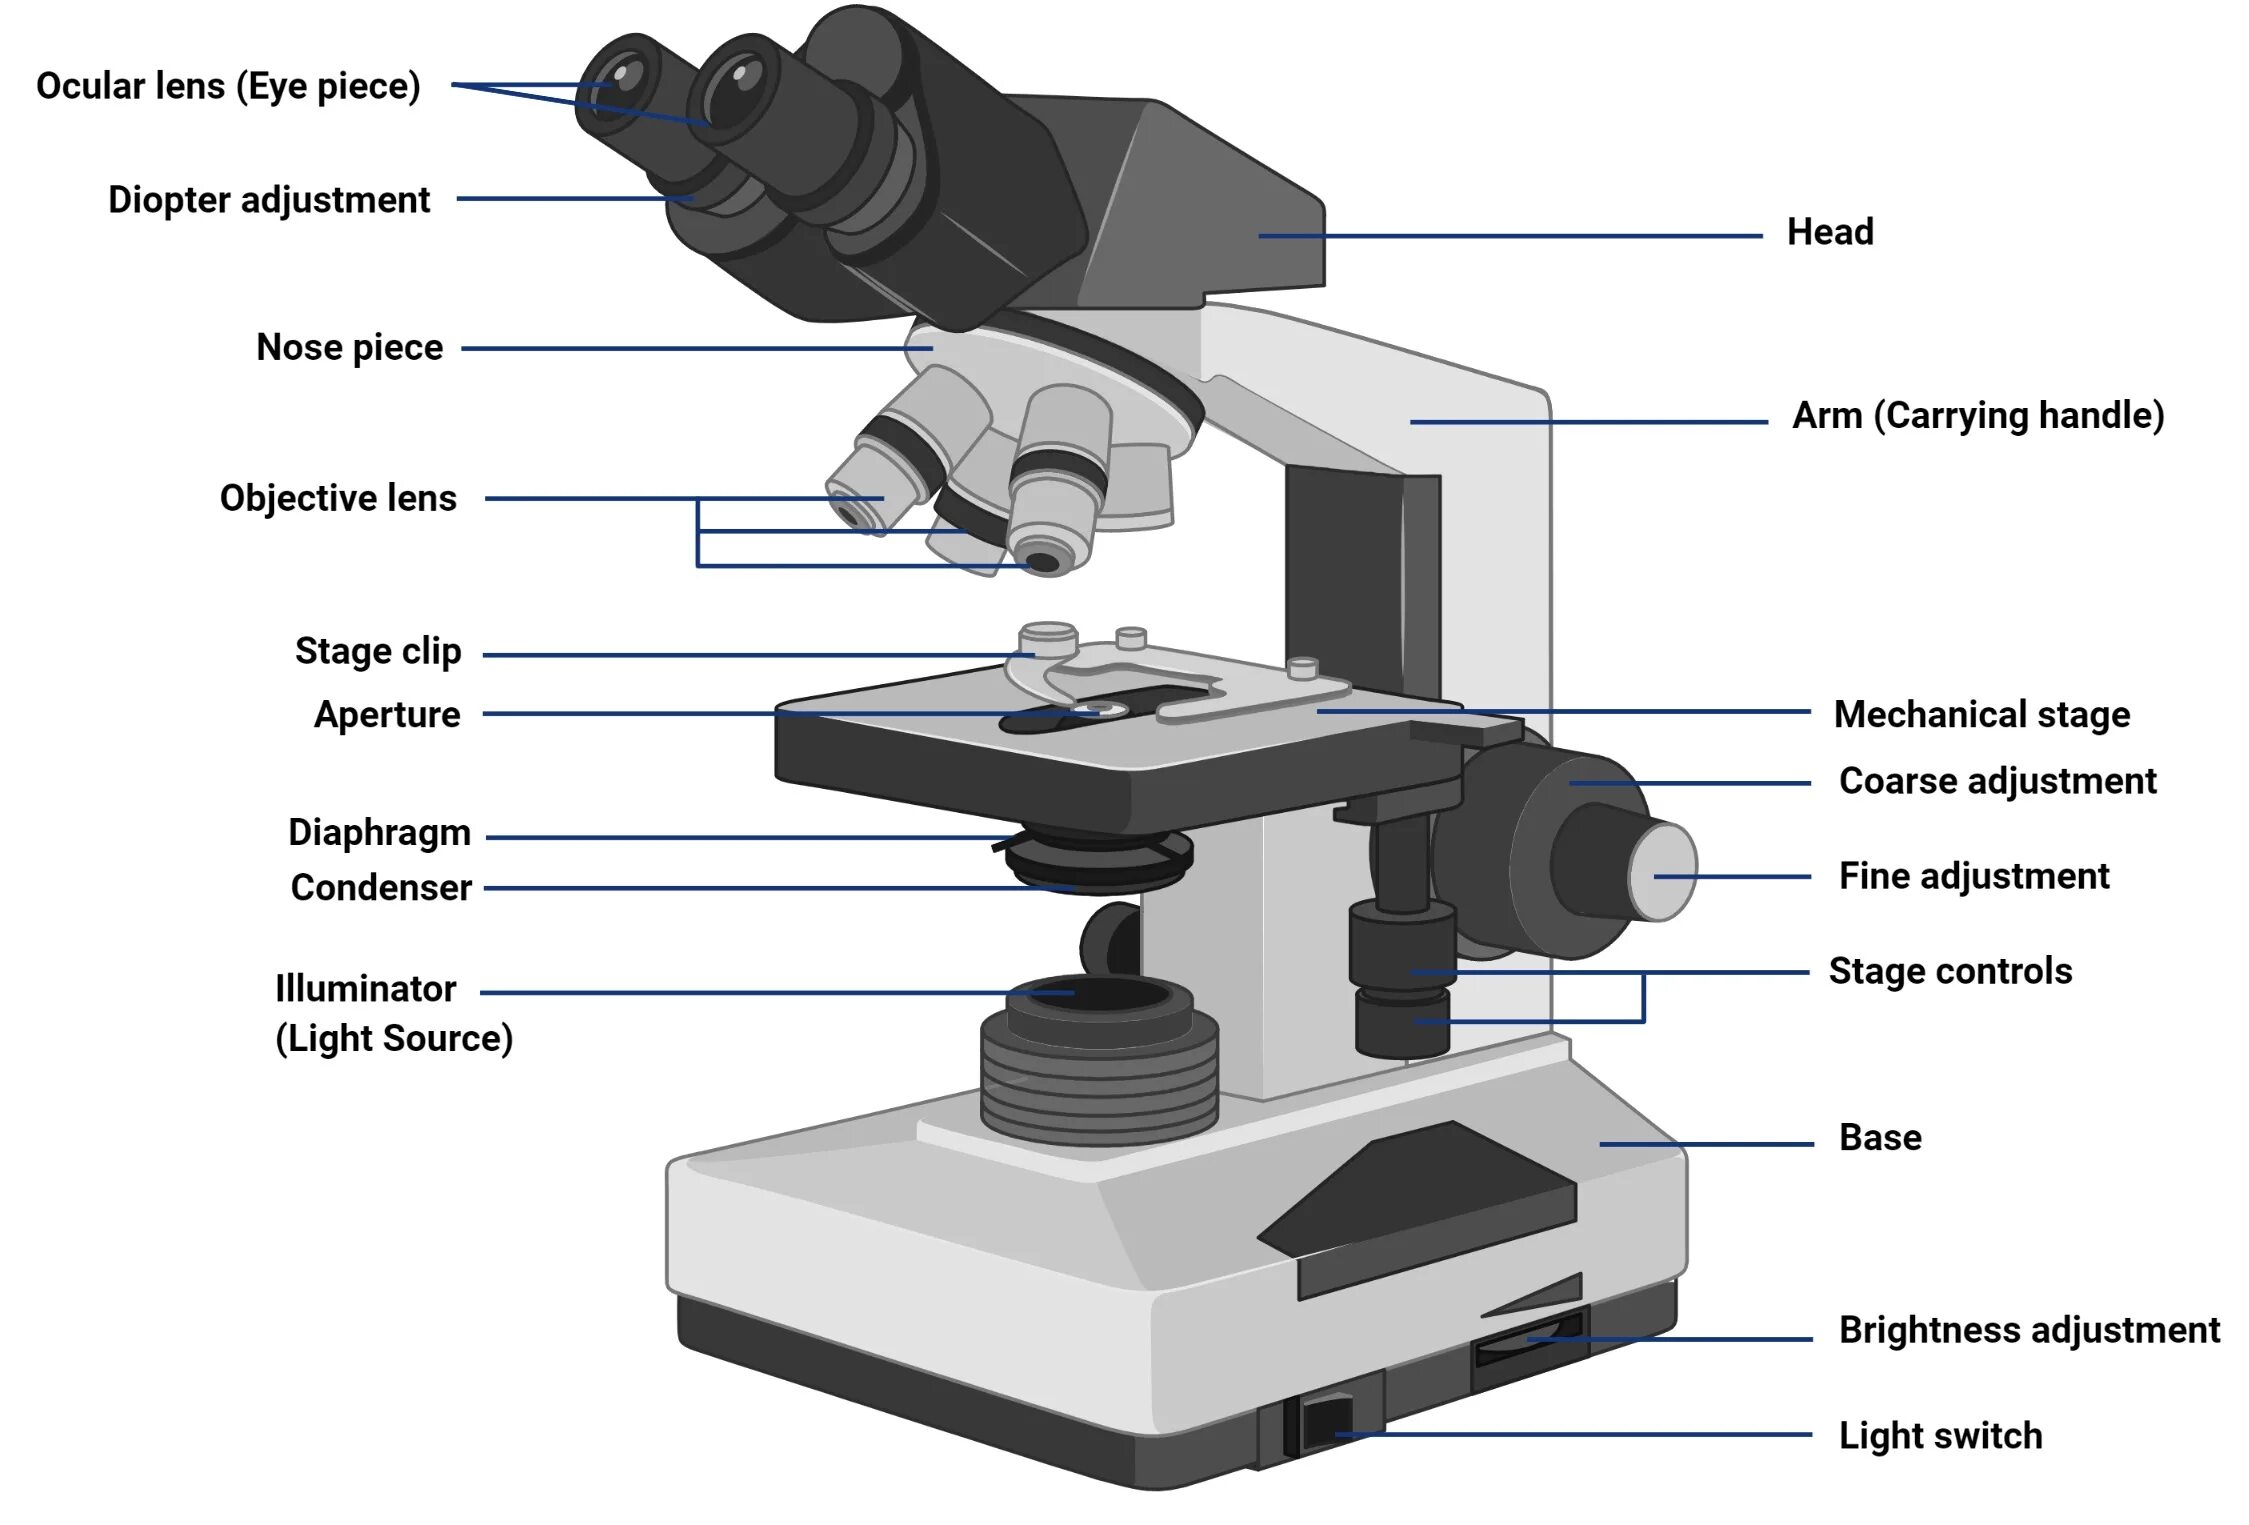 Какая функция тубуса в микроскопе. Микроскоп p5000i Digital Analysis Microscope. Микроскоп с2108. Строение микроскопа макровинт. Строение микроскопа Микмед.